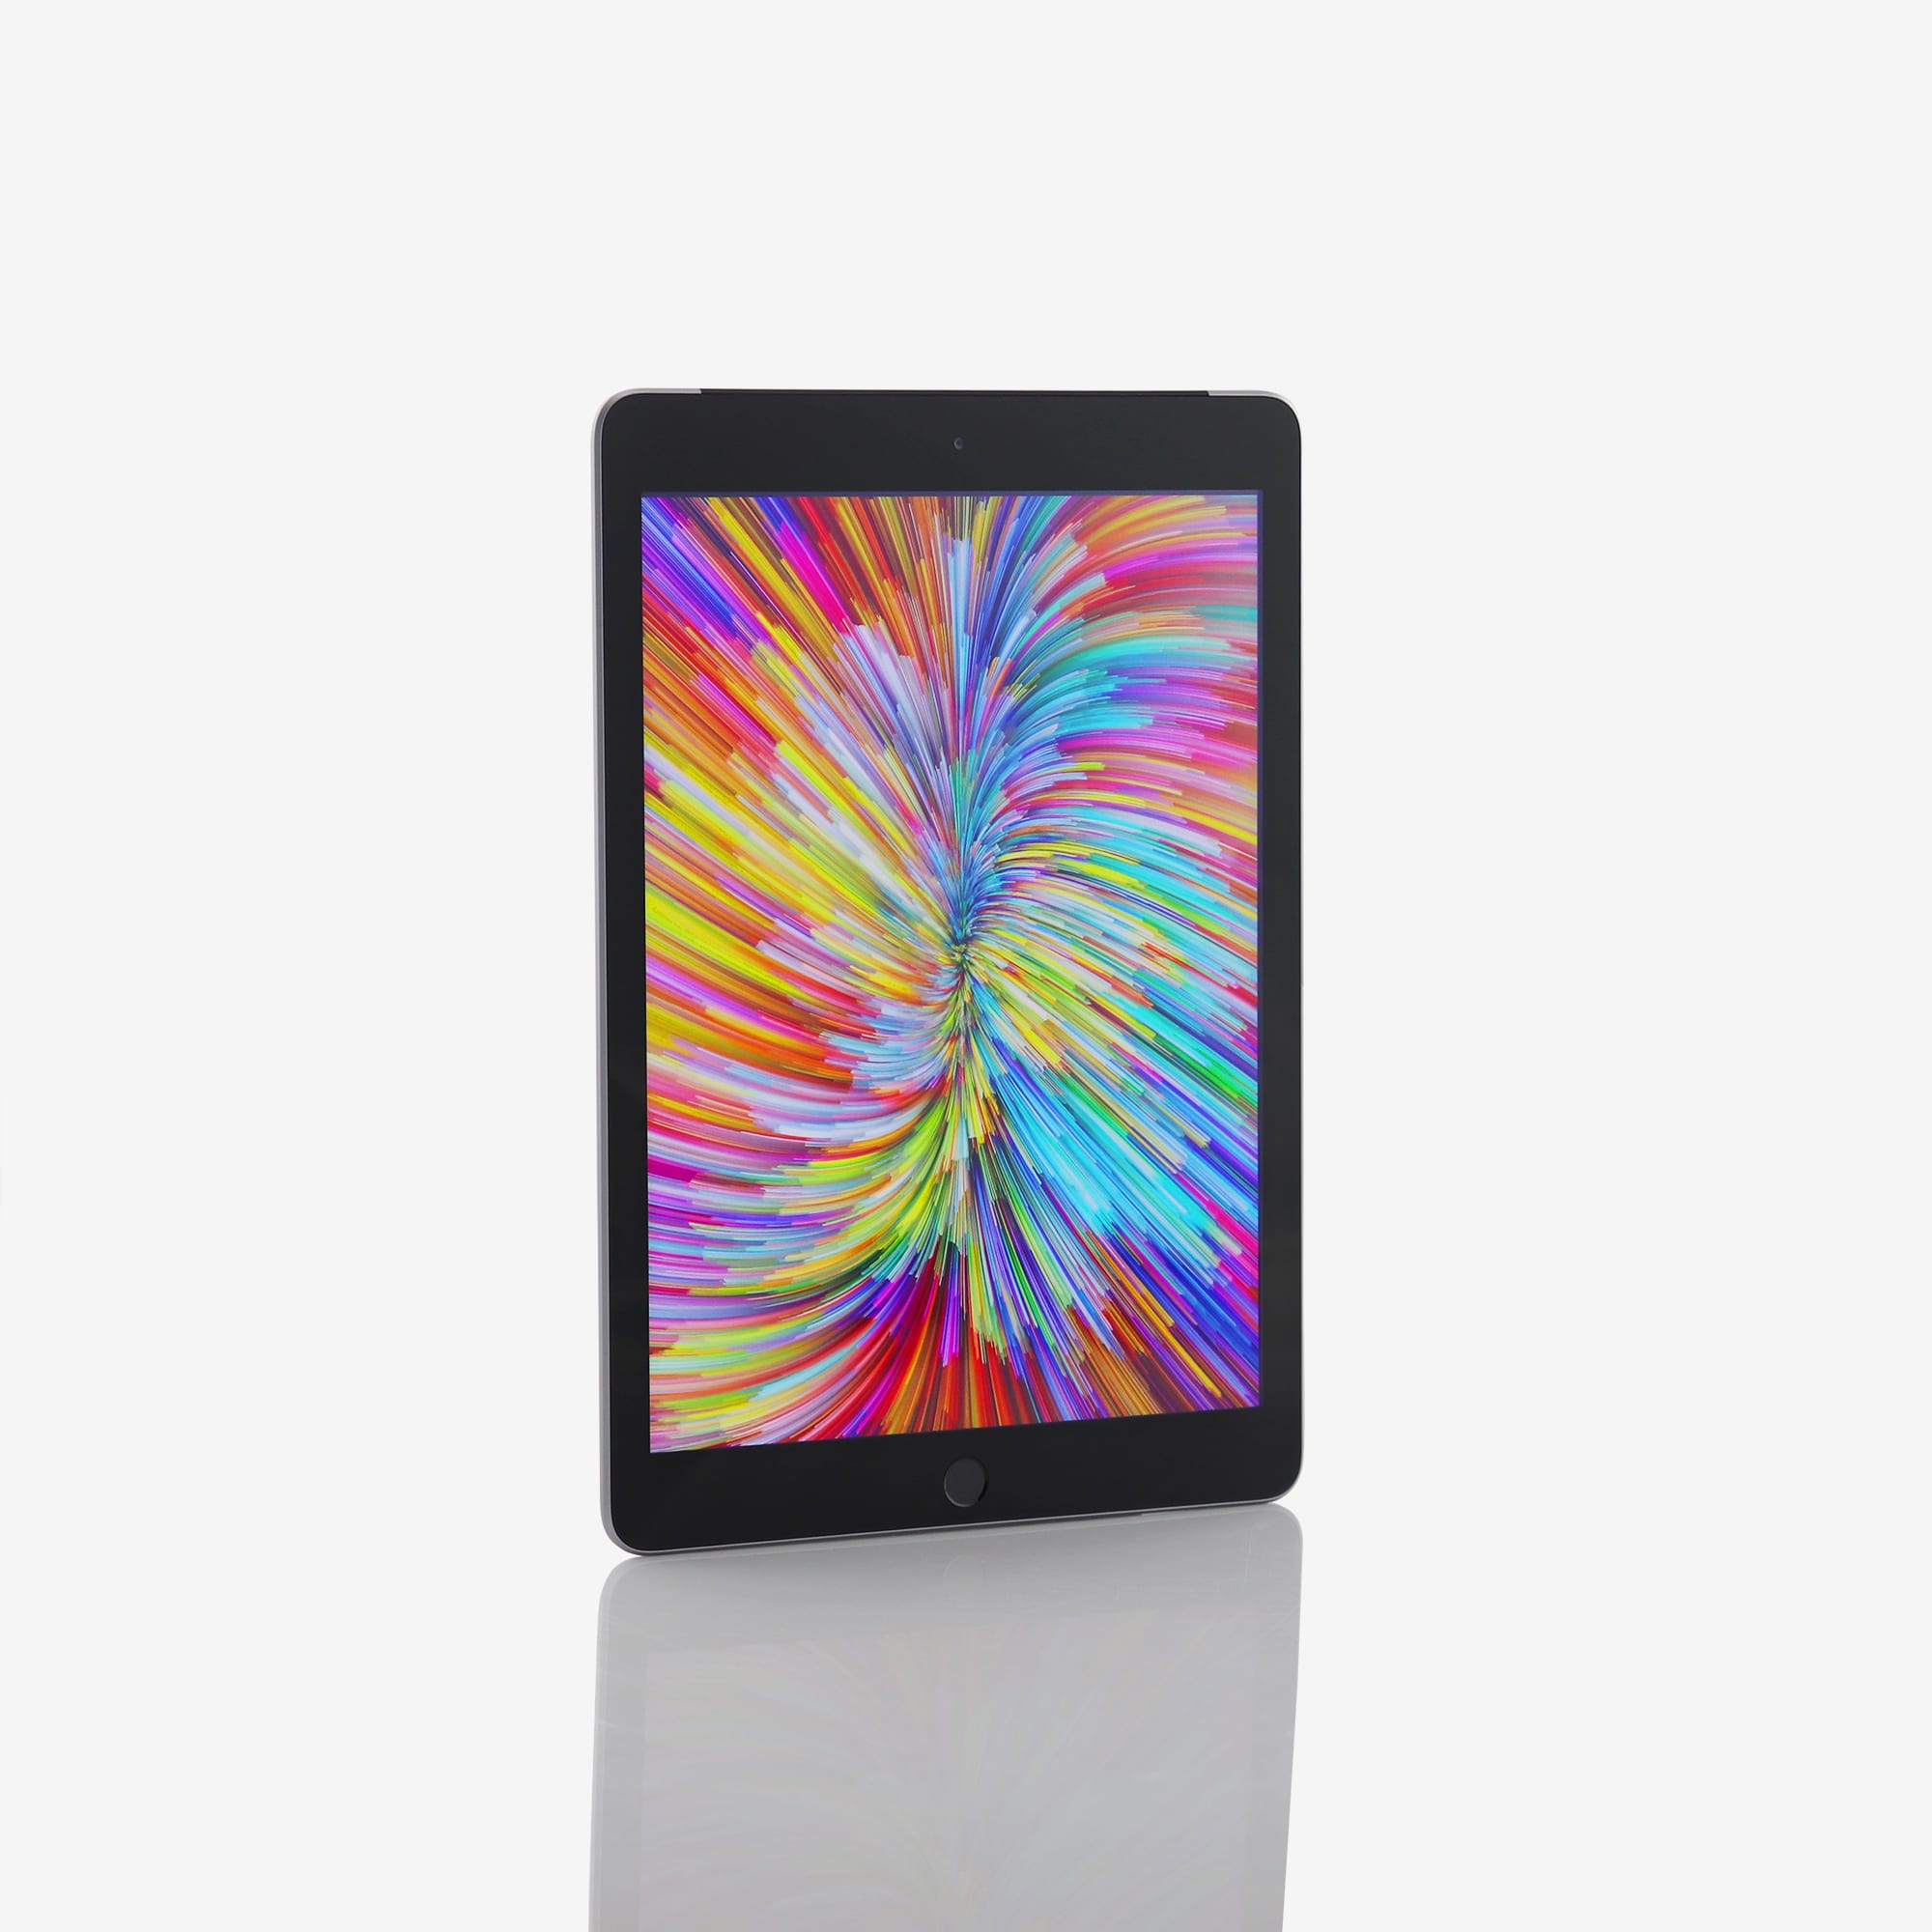 1 x iPad (5th generation) (Wi-Fi + Cellular) Space Grey